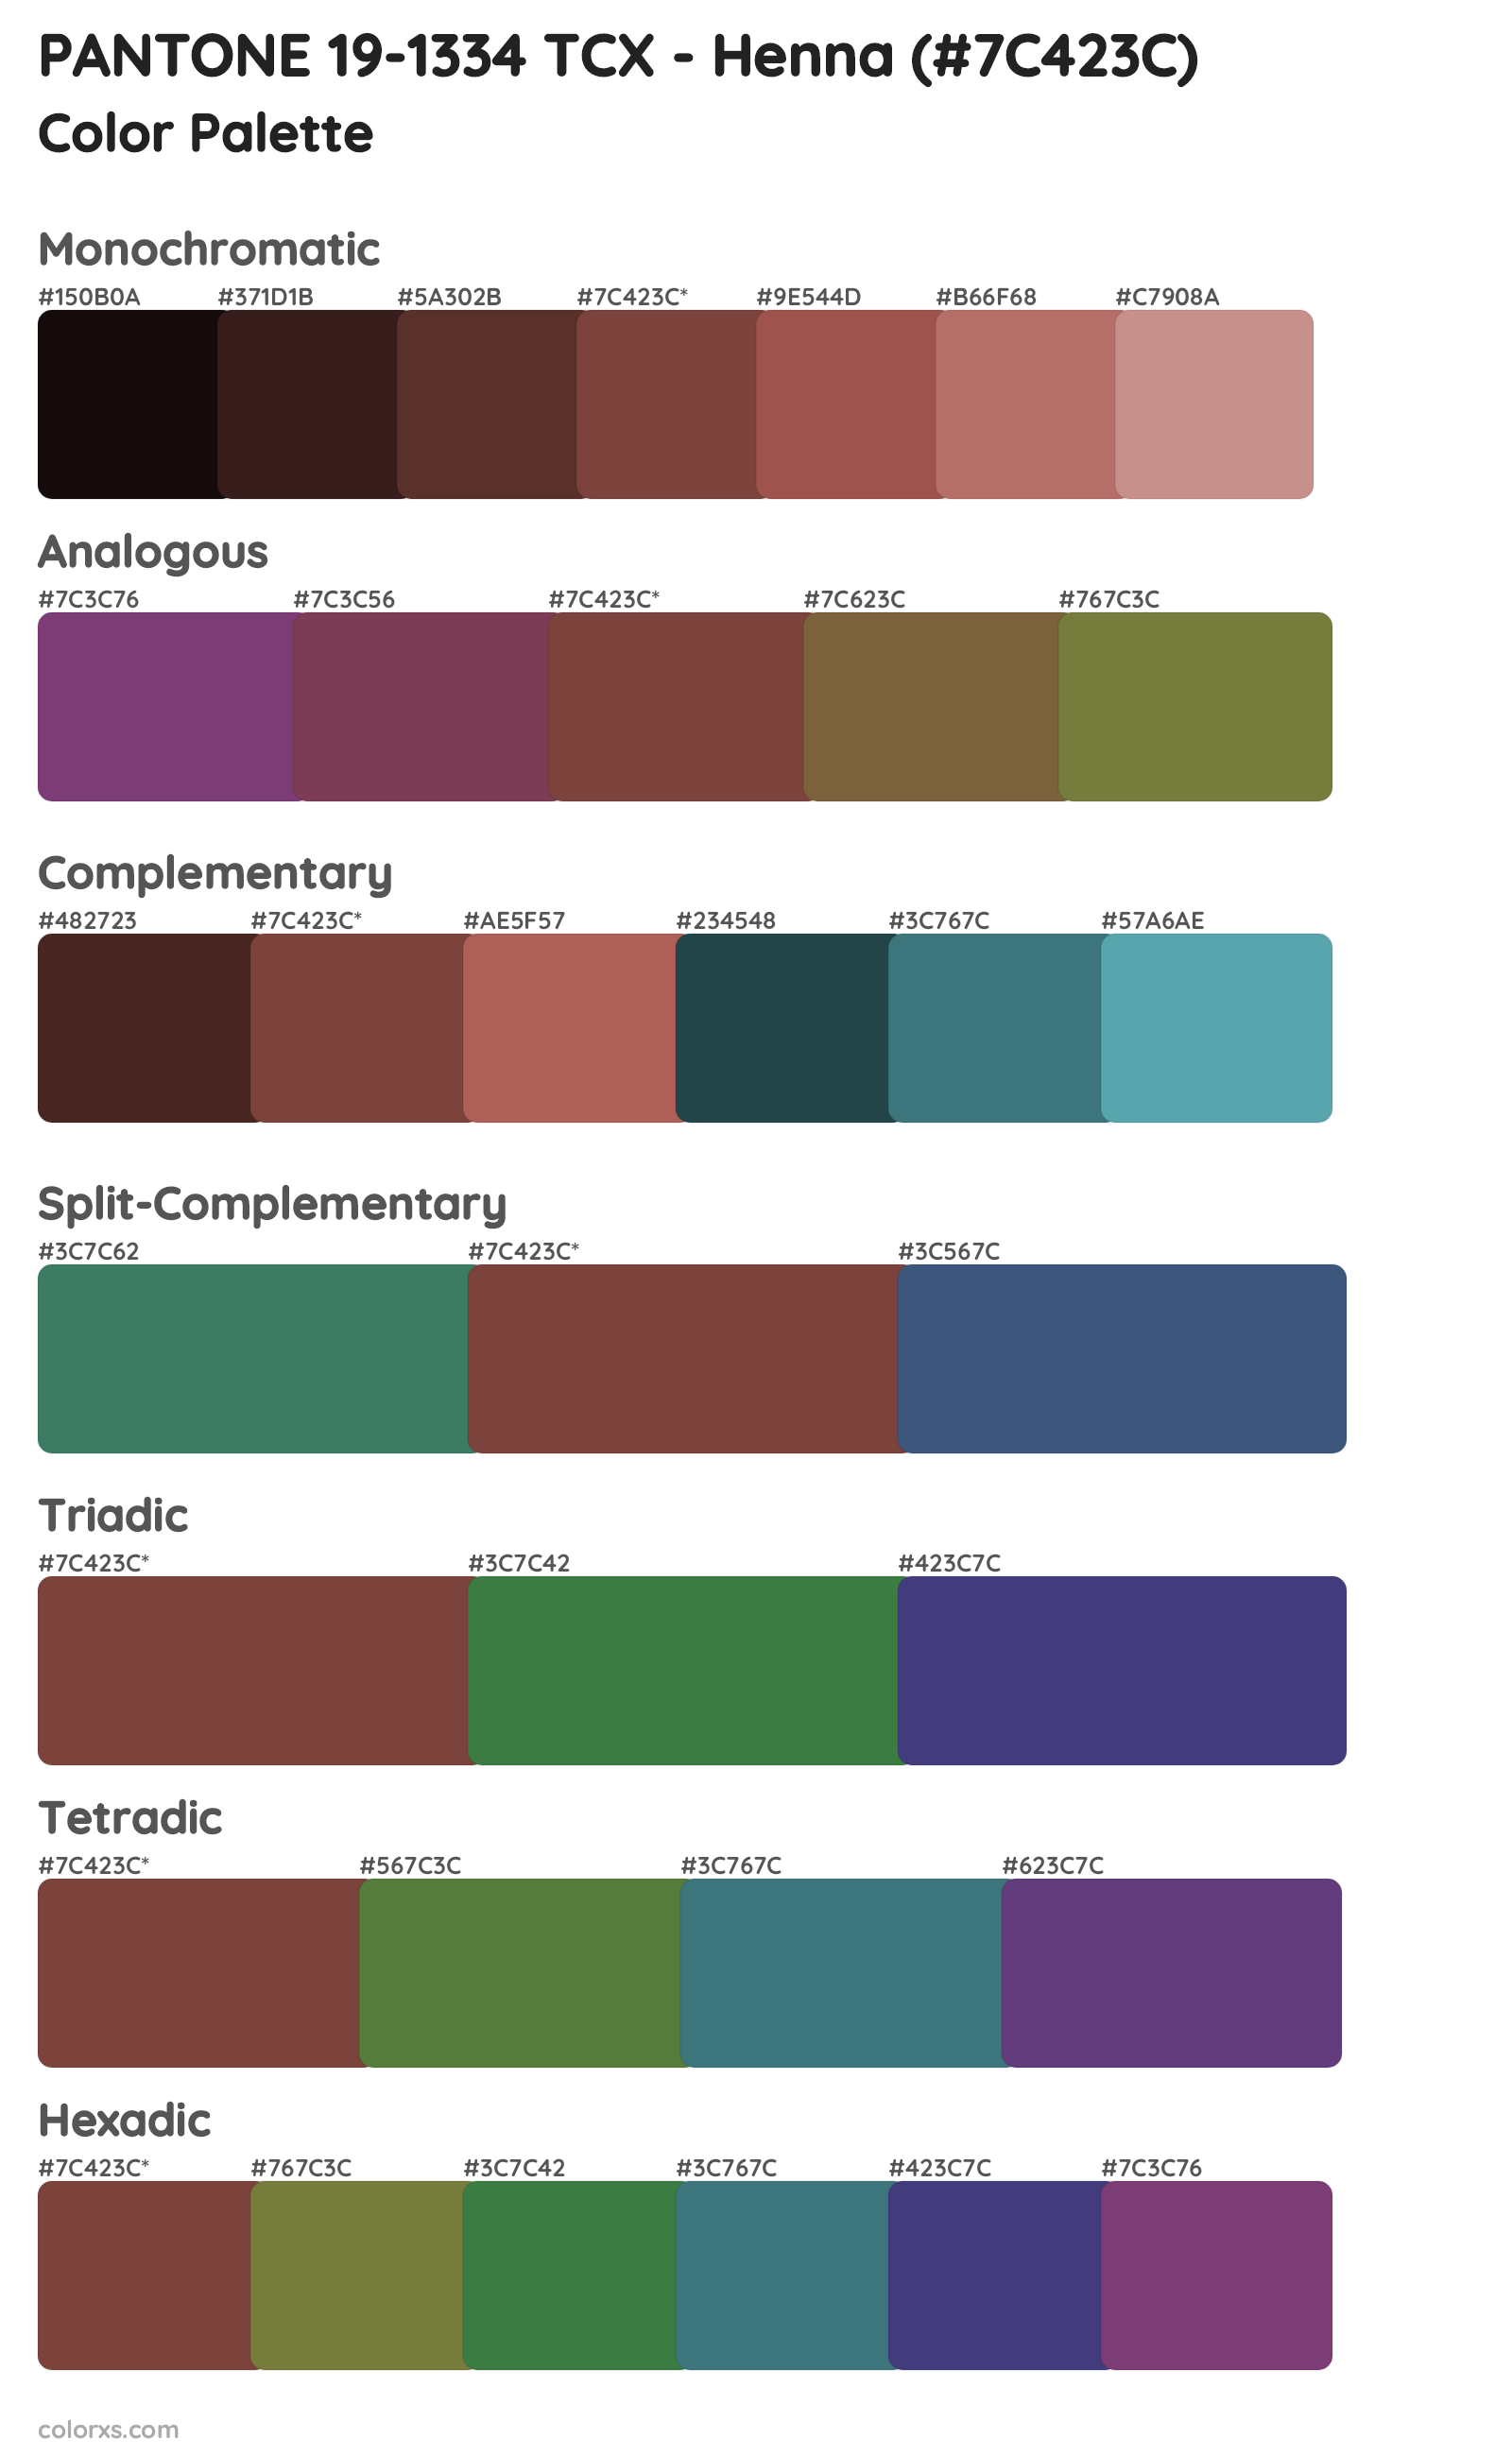 PANTONE 19-1334 TCX - Henna Color Scheme Palettes